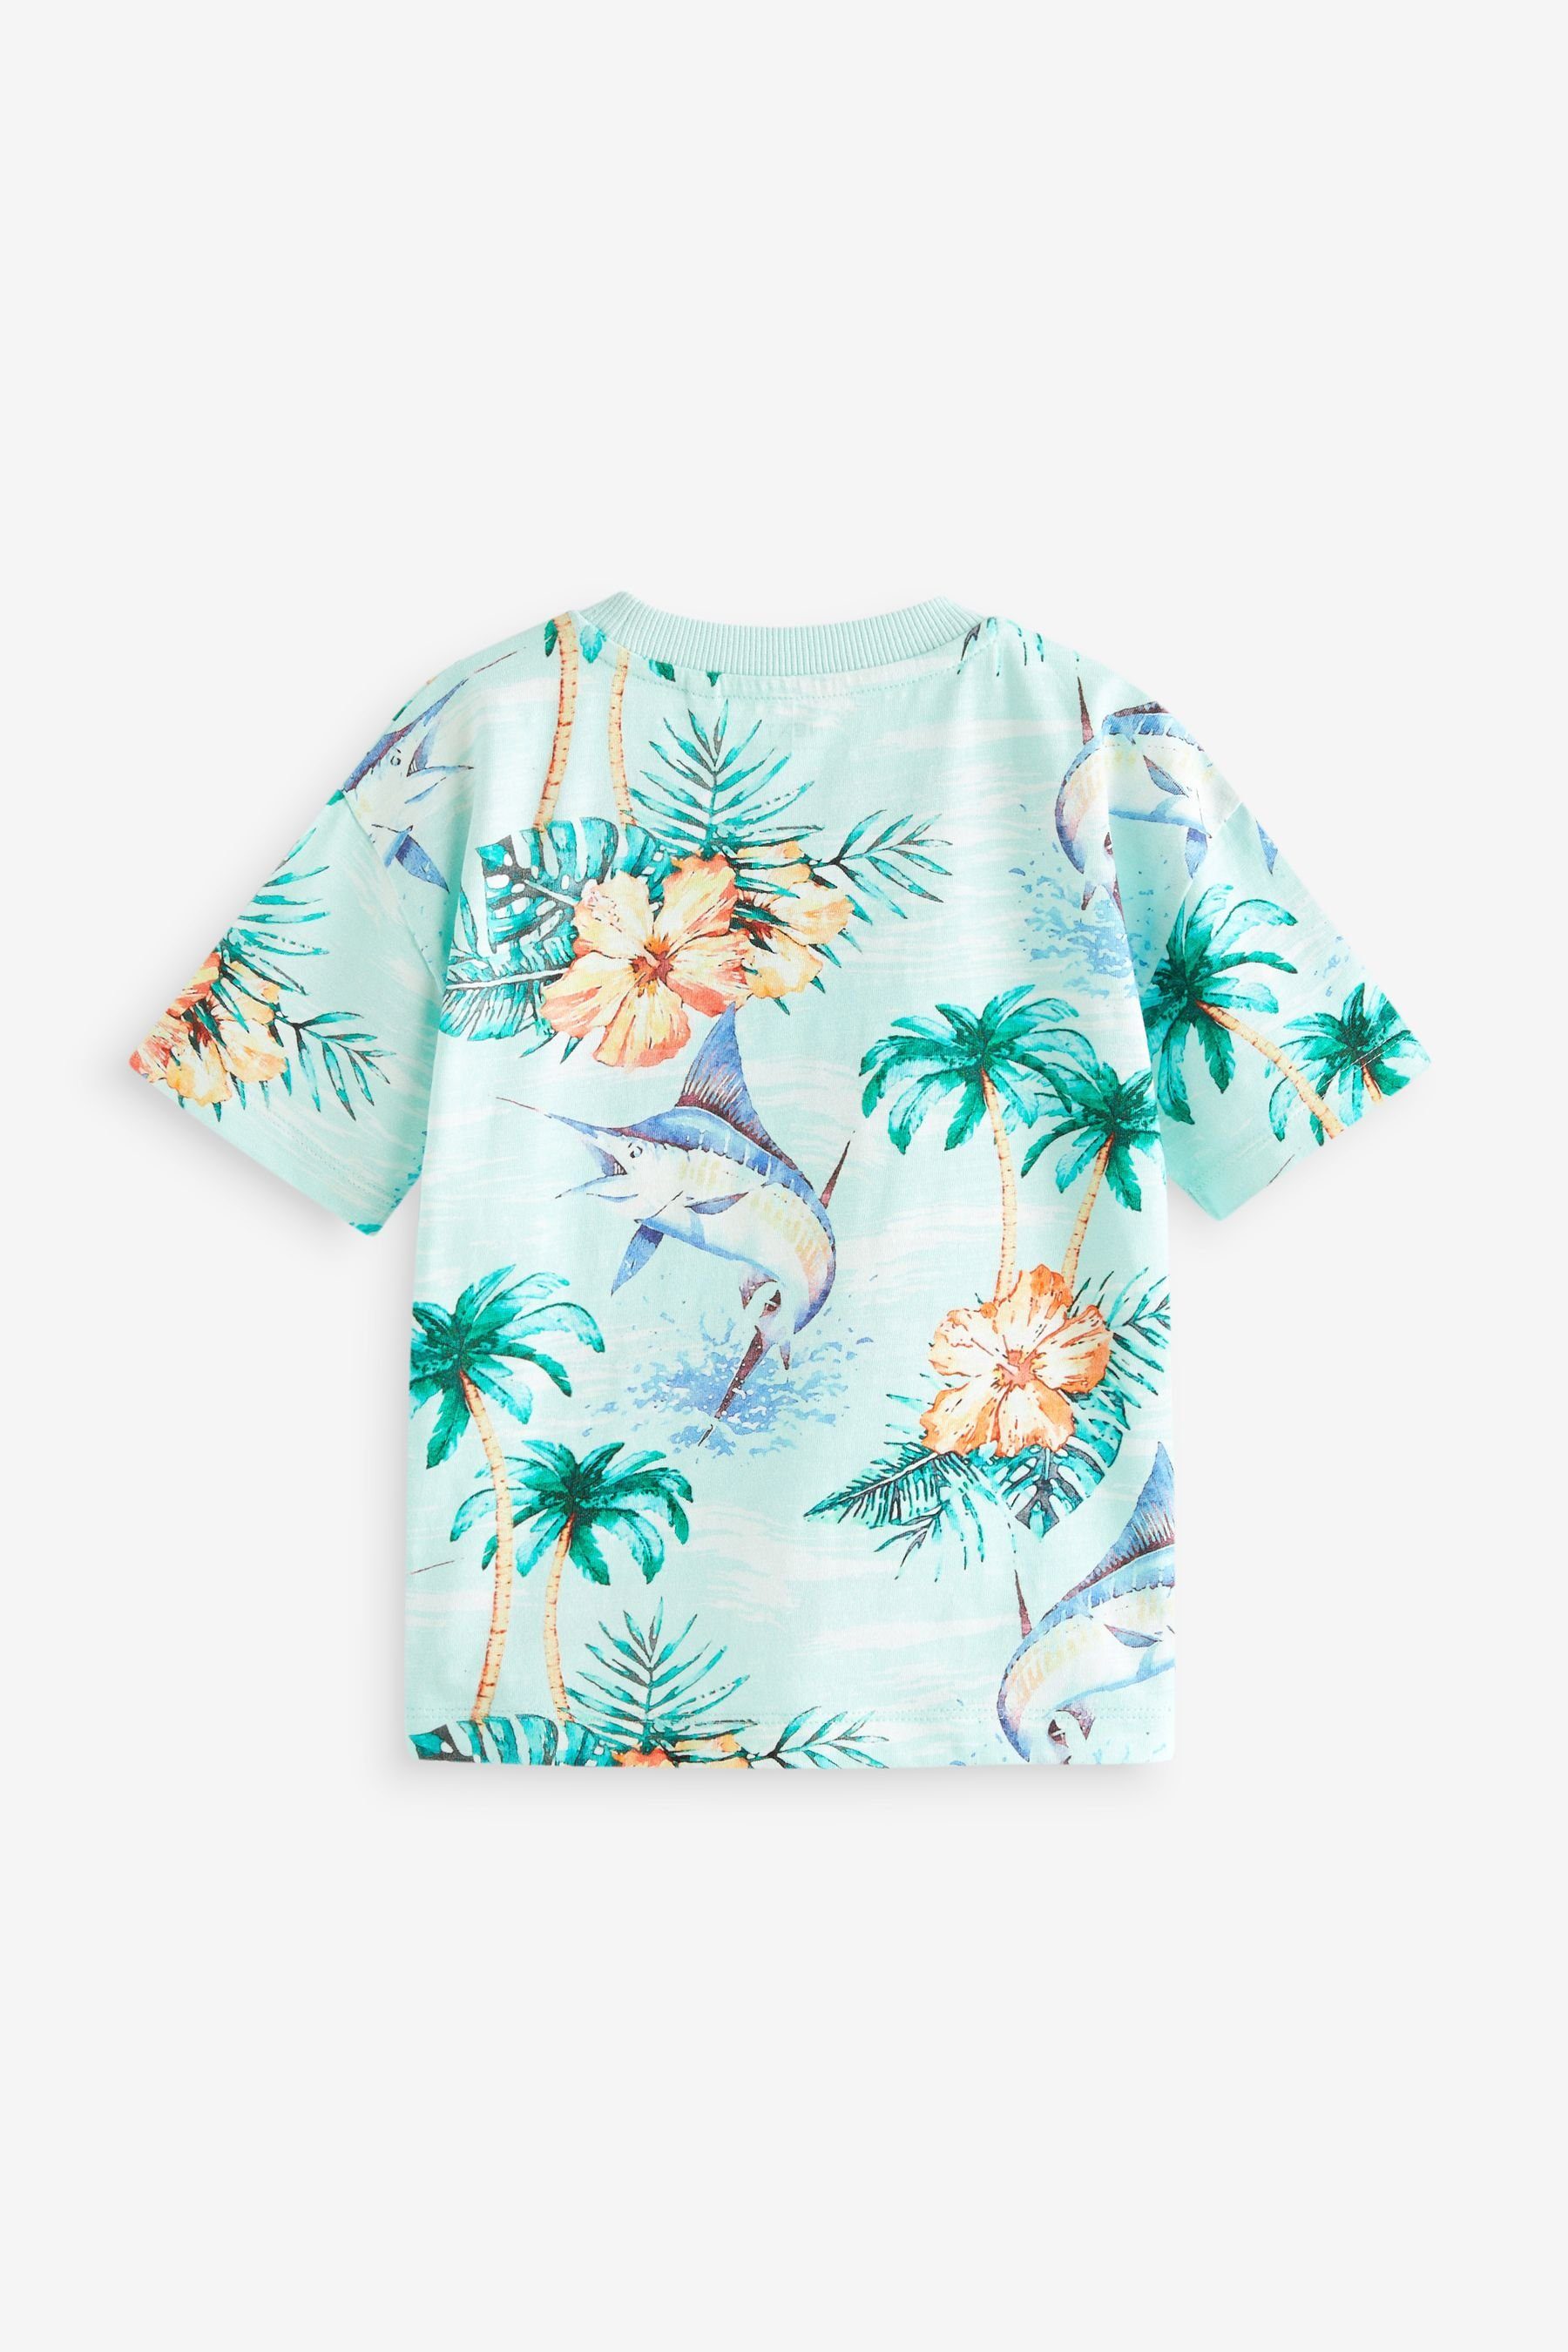 mit kurzen bedruckt T-Shirt T-Shirt Next Blue Ärmeln, Floral Hibiscus durchgehend (1-tlg)